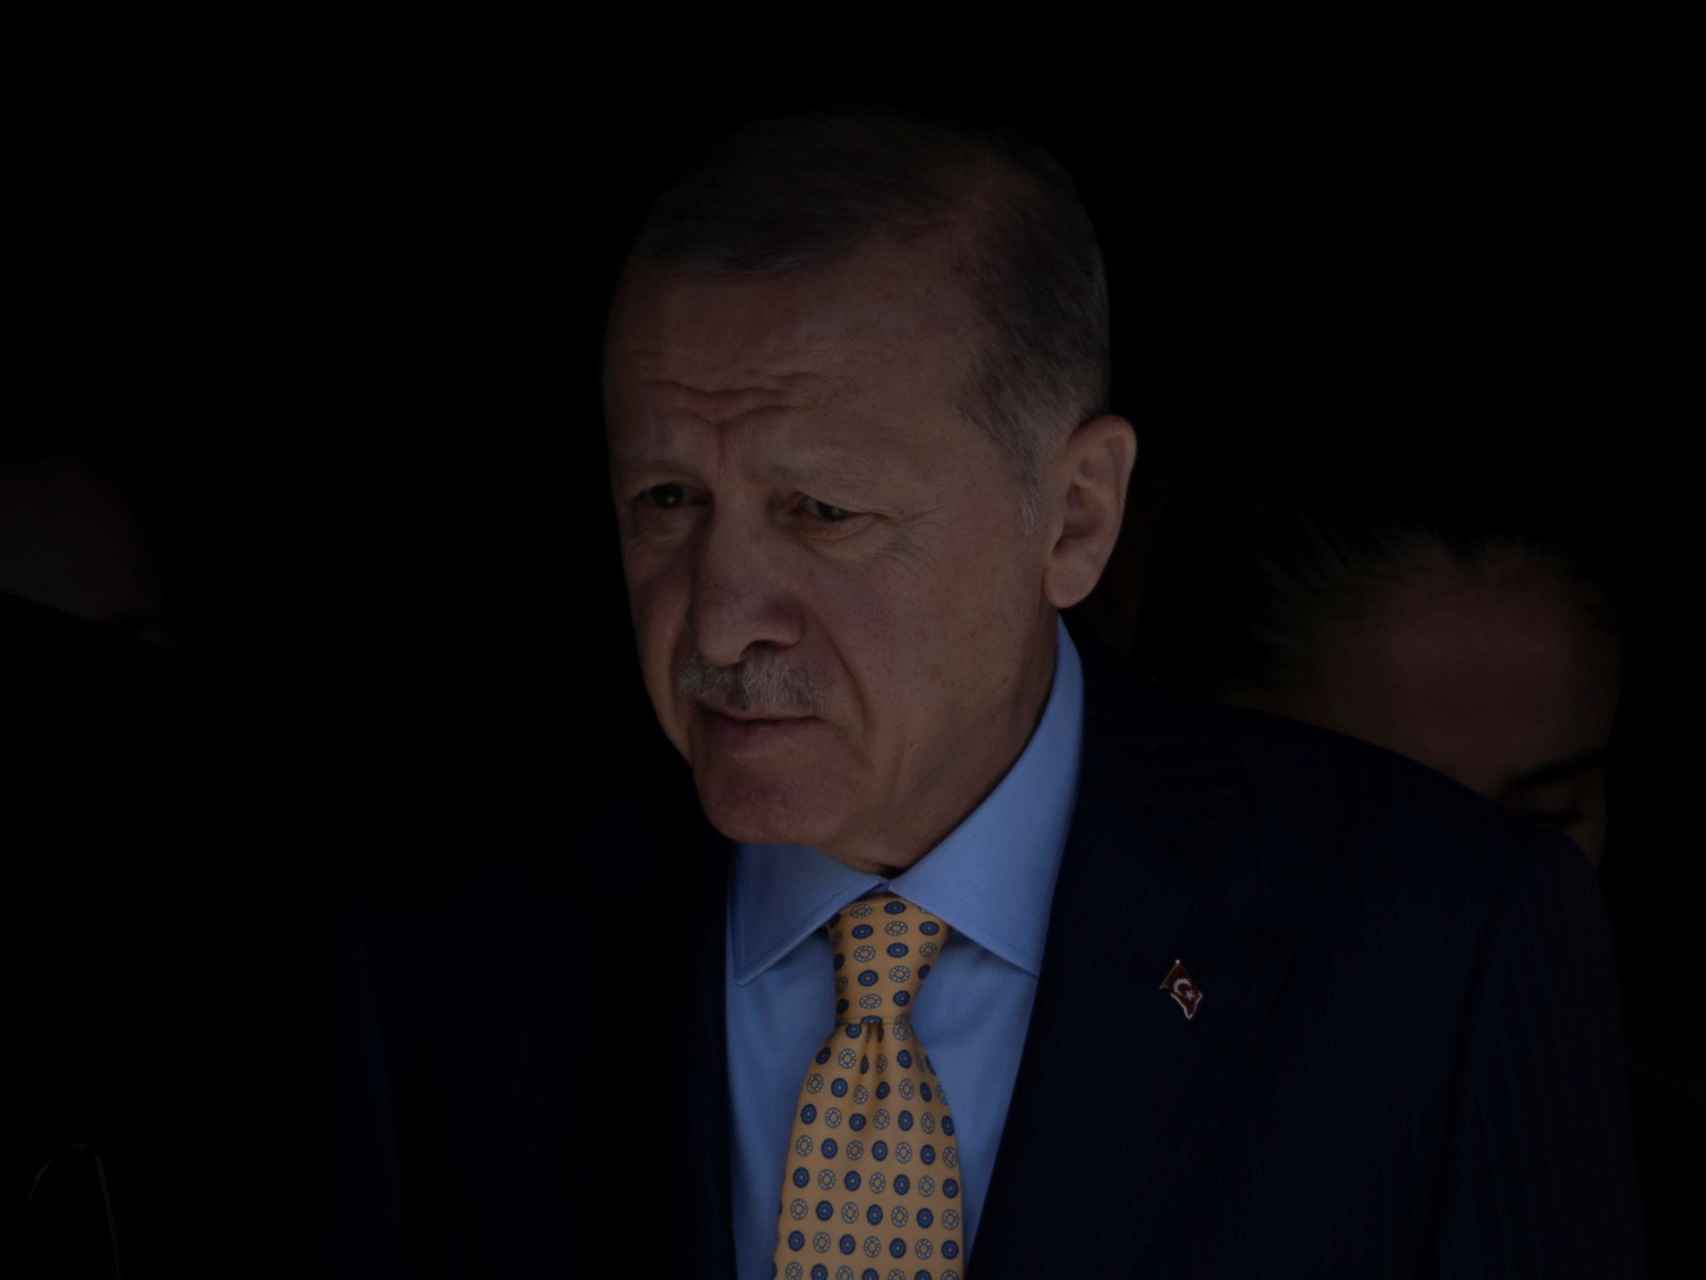 El presidente turco Tayyip Erdogan deposita su voto en Estambul el domingo 31 de marzo.